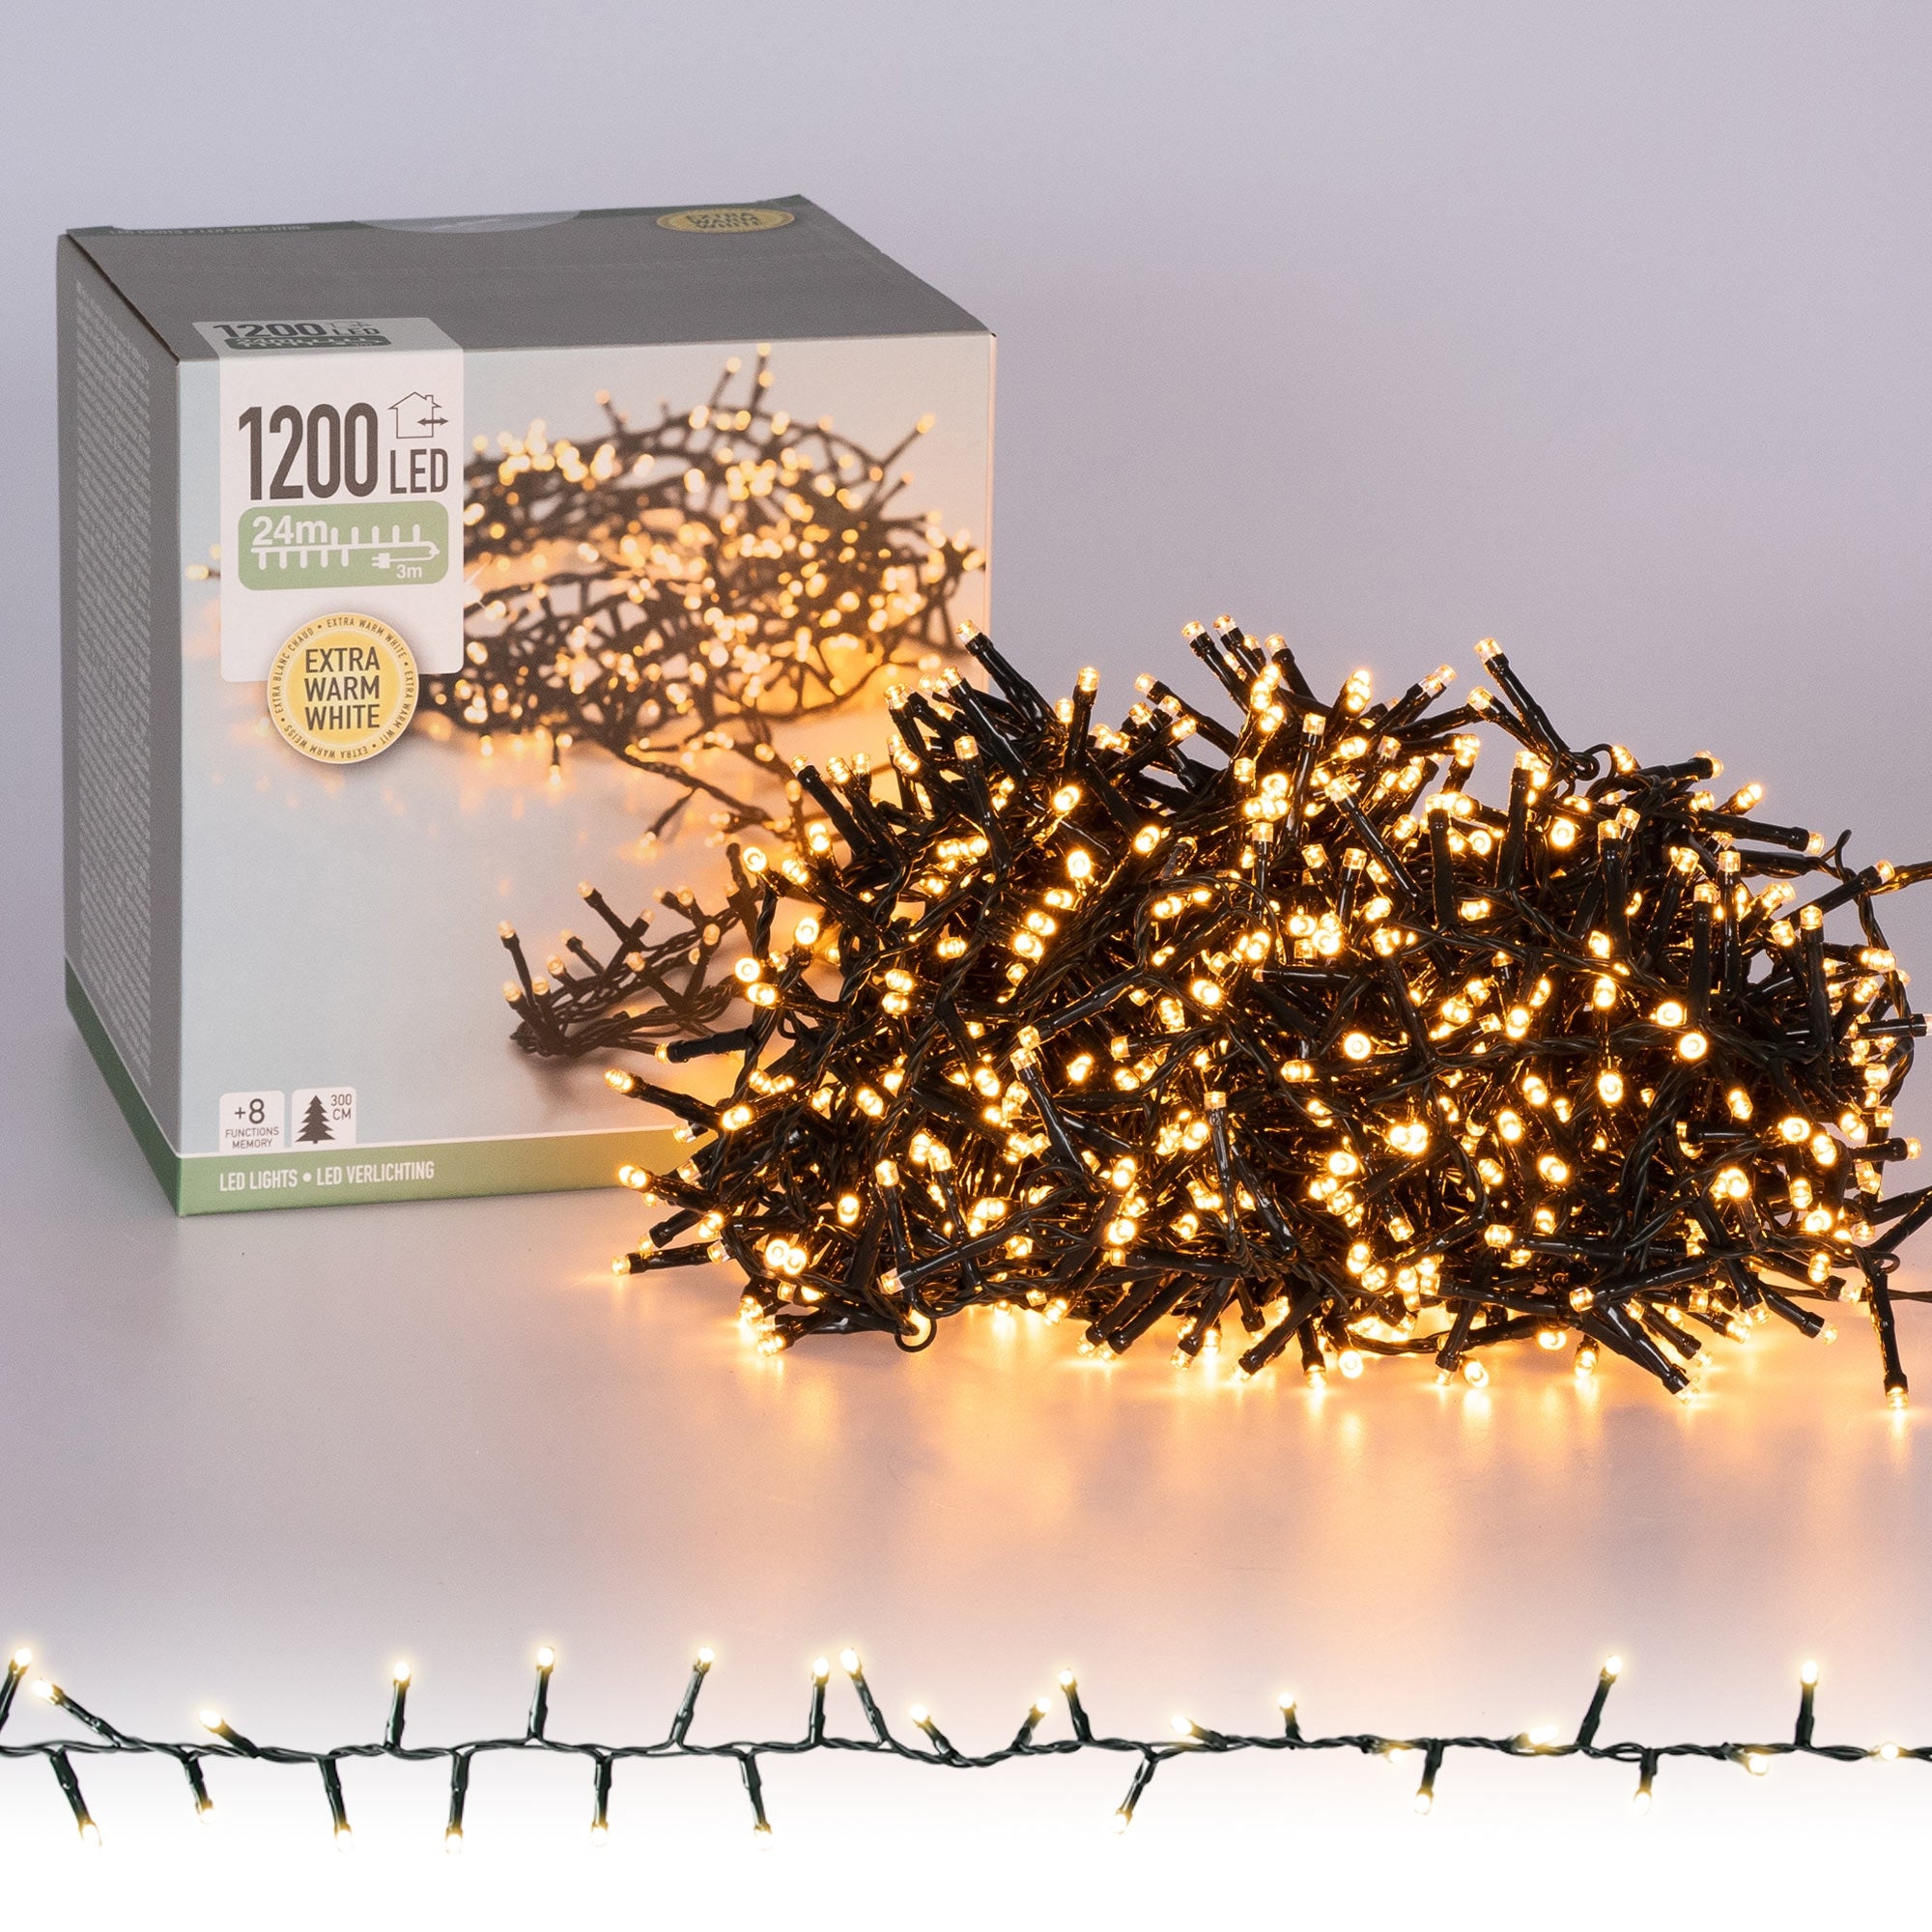 Guirlande lumineuse Noël verte 1200 LED blanc chaud pour extérieur 220V